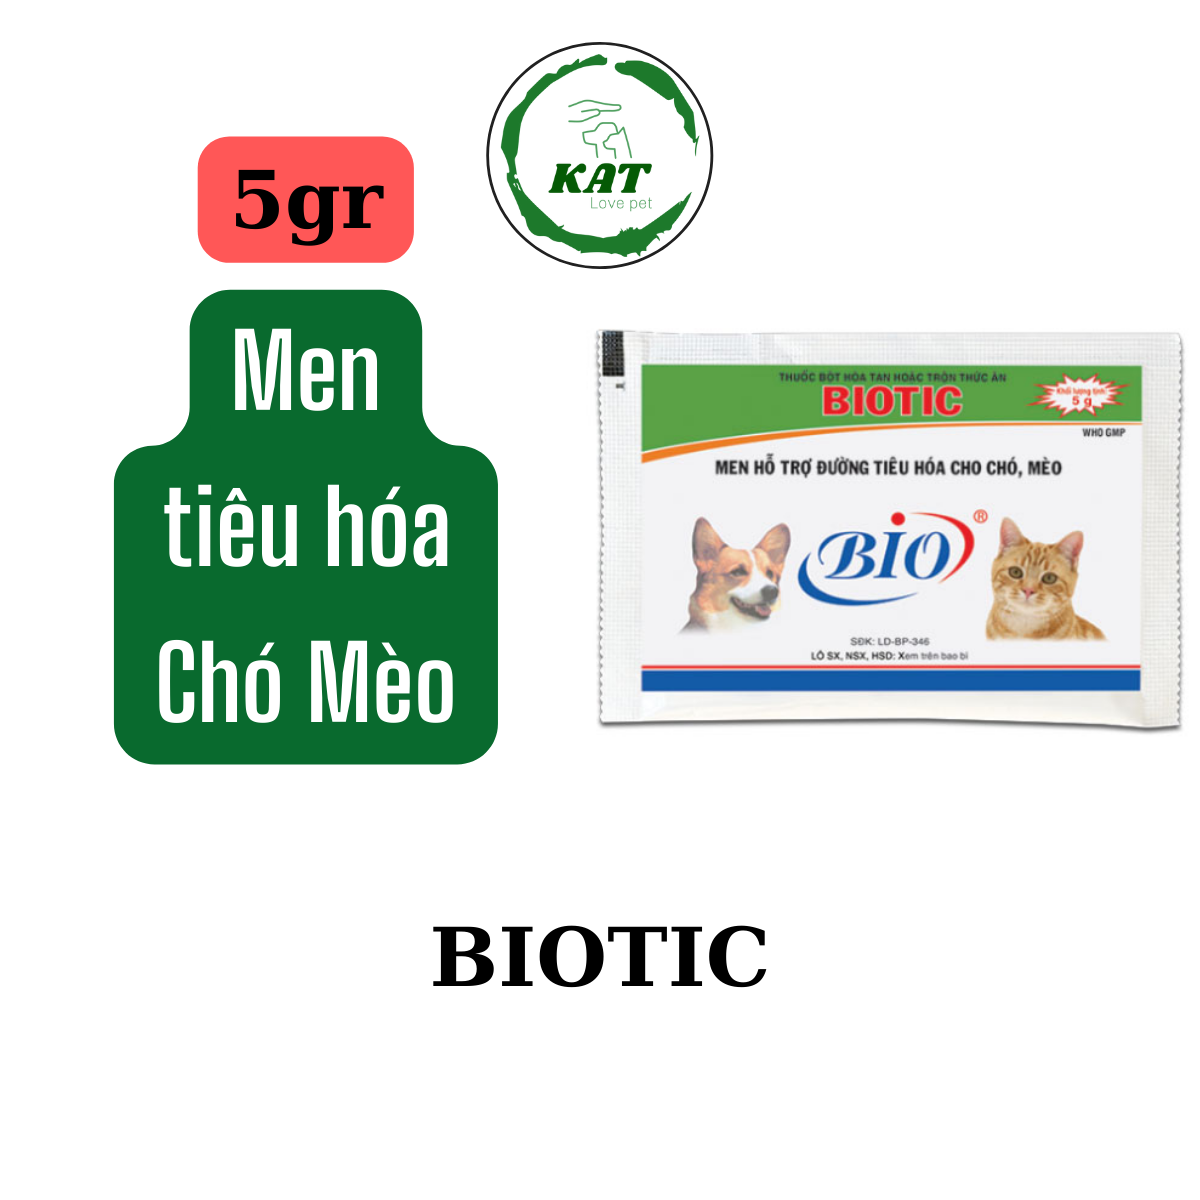 5gr Men tiêu hoá cho chó mèo Biotic - Gói 5gr - KAT Store